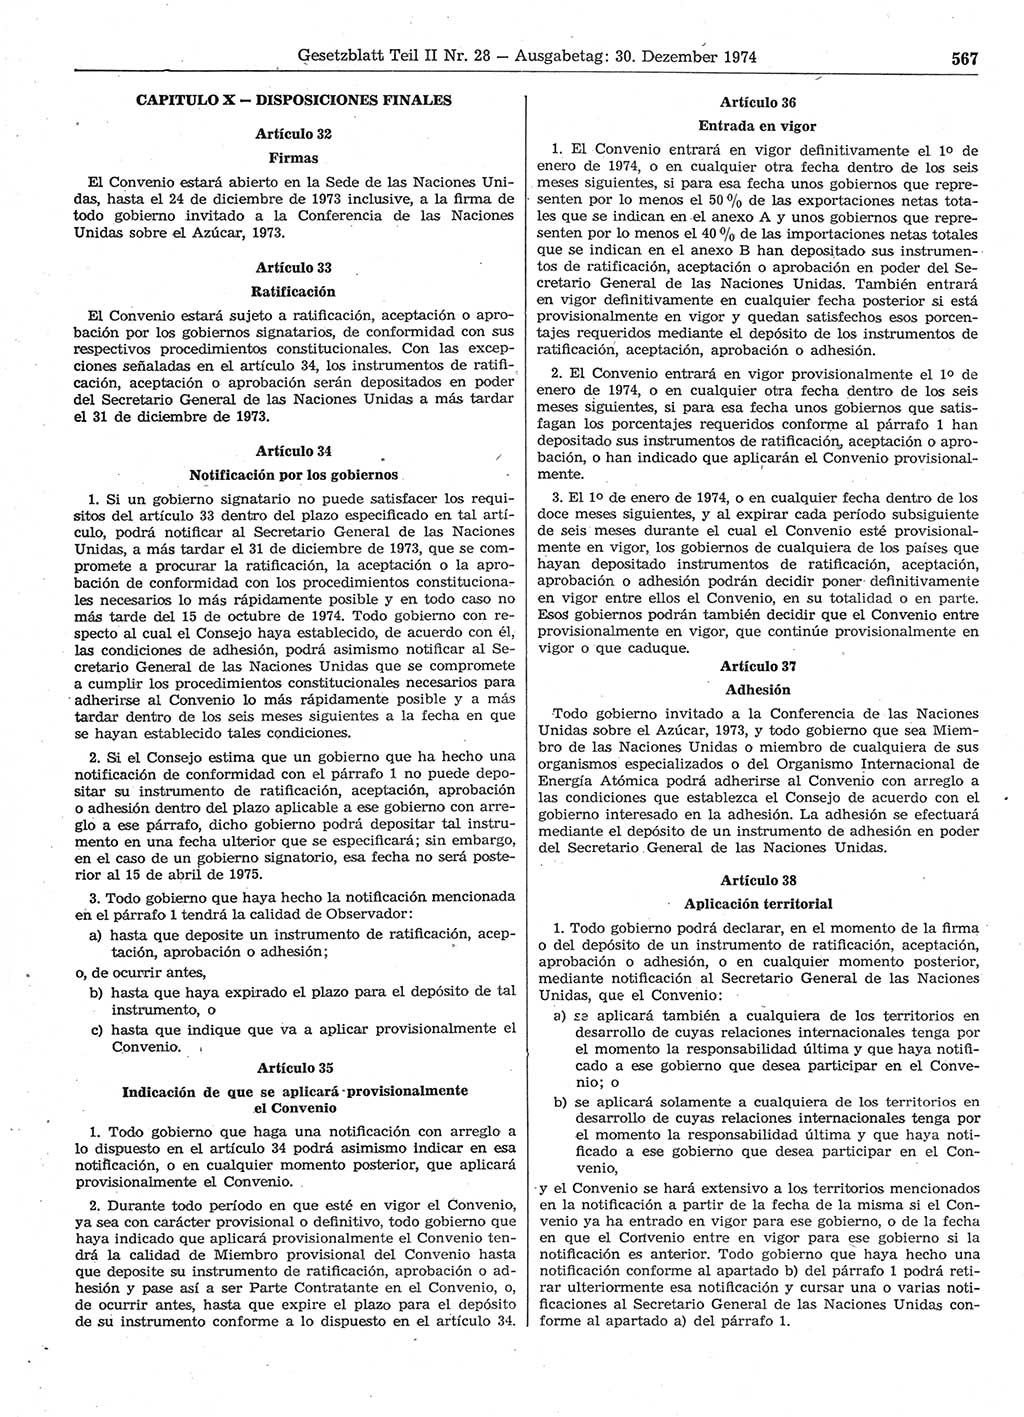 Gesetzblatt (GBl.) der Deutschen Demokratischen Republik (DDR) Teil ⅠⅠ 1974, Seite 567 (GBl. DDR ⅠⅠ 1974, S. 567)